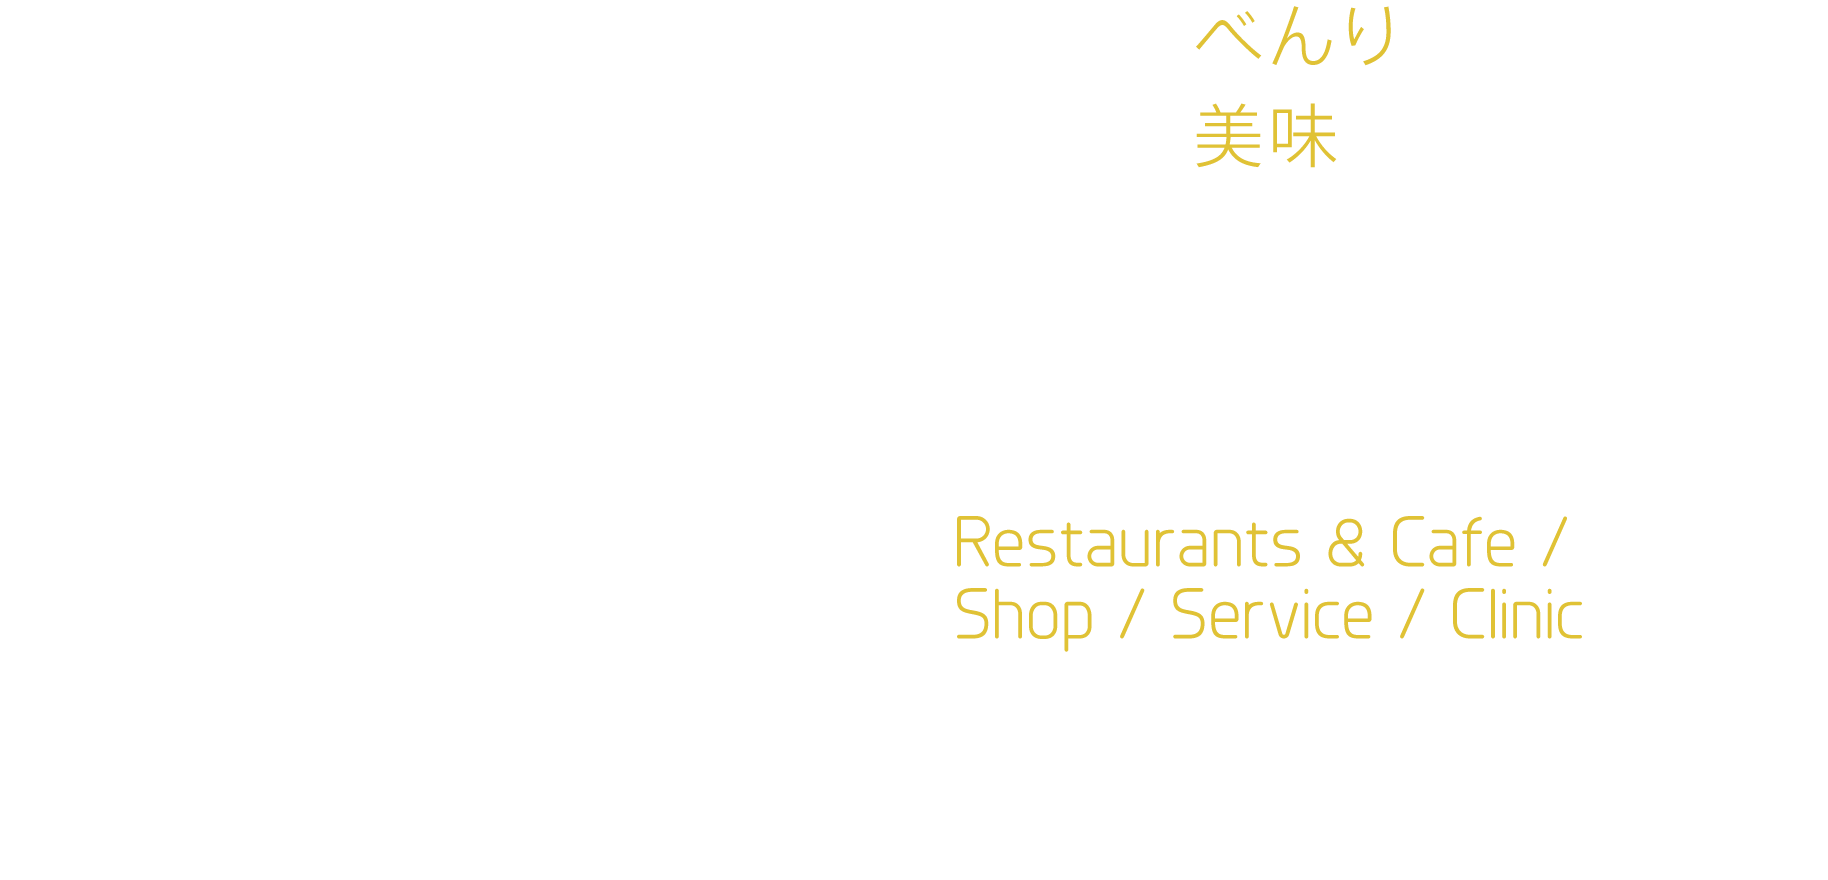 もっと、べんりに　もっと、美味しく　MEGURO CENTRAL SQUARE　SHOPS & RESTAURANTS